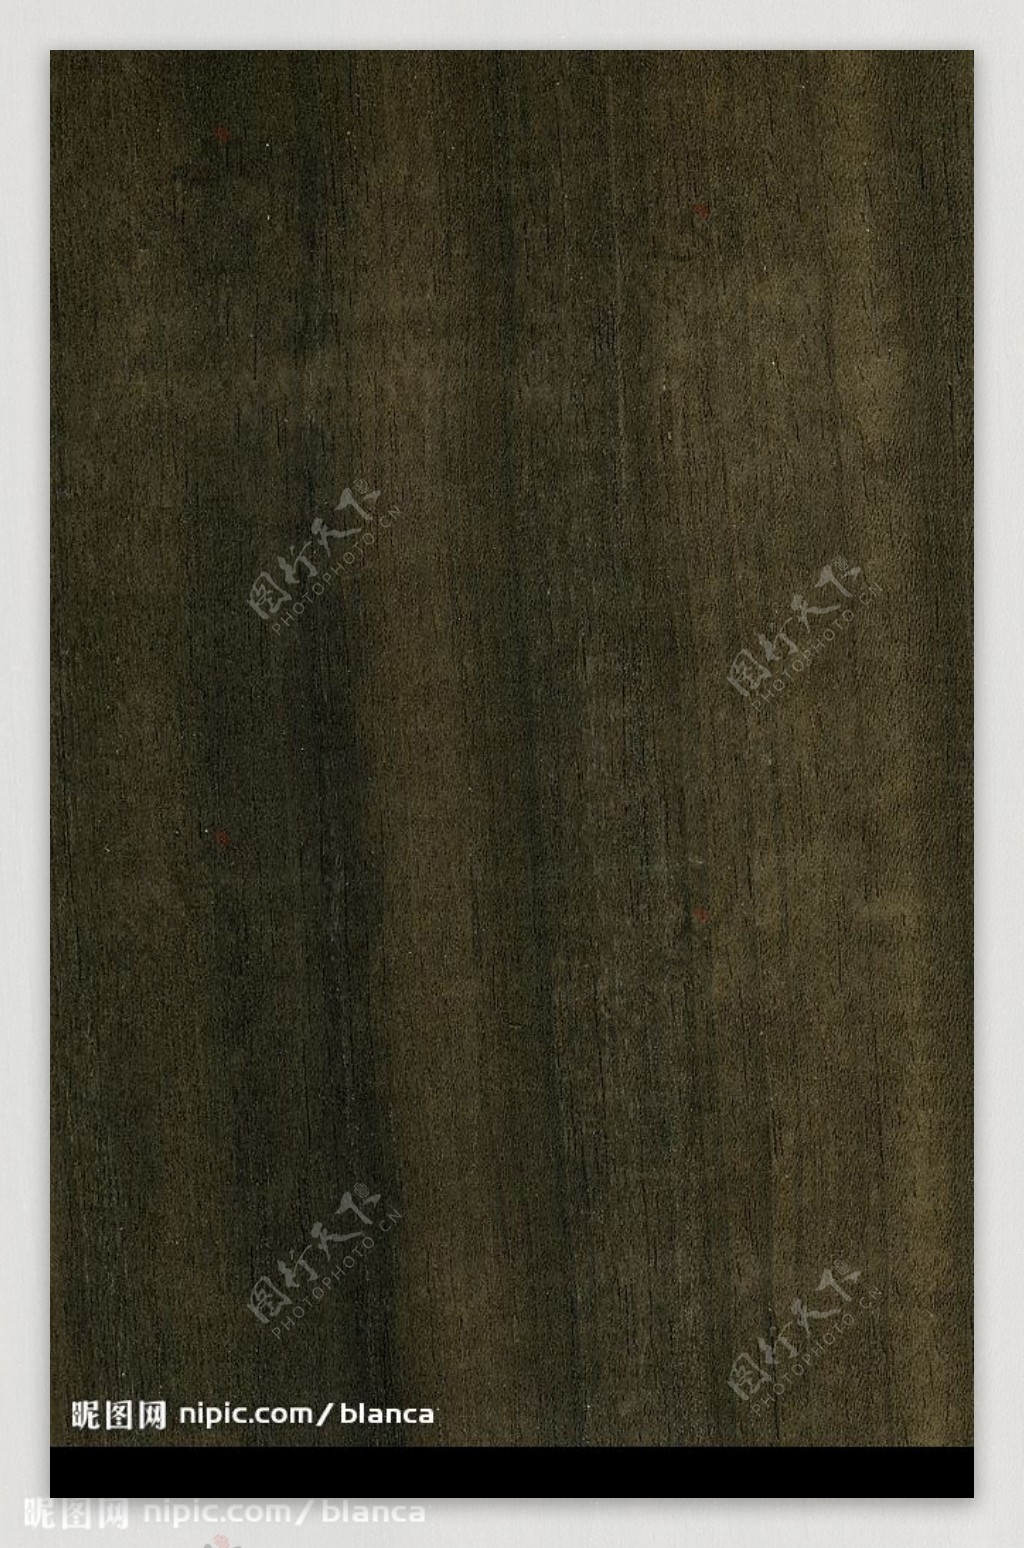 綠褐色直紋木質底圖图片